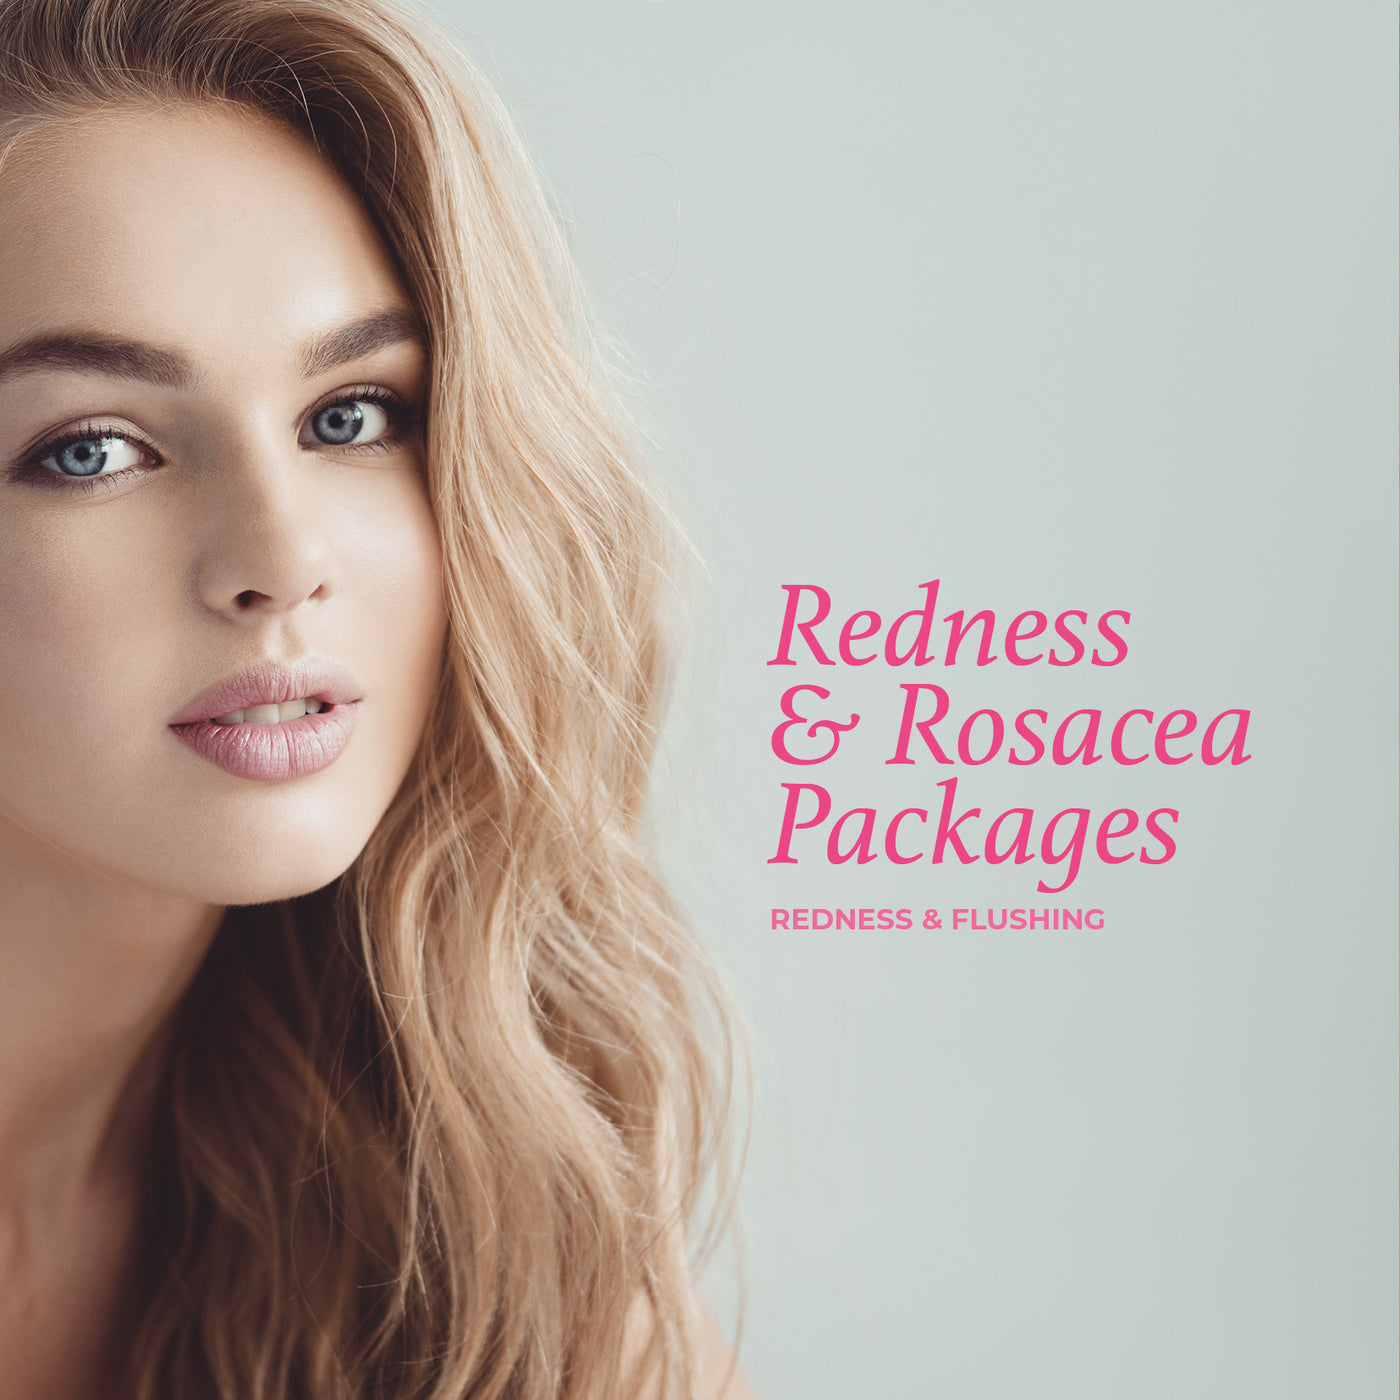 Redness & Rosacea Package - Redness & flushing